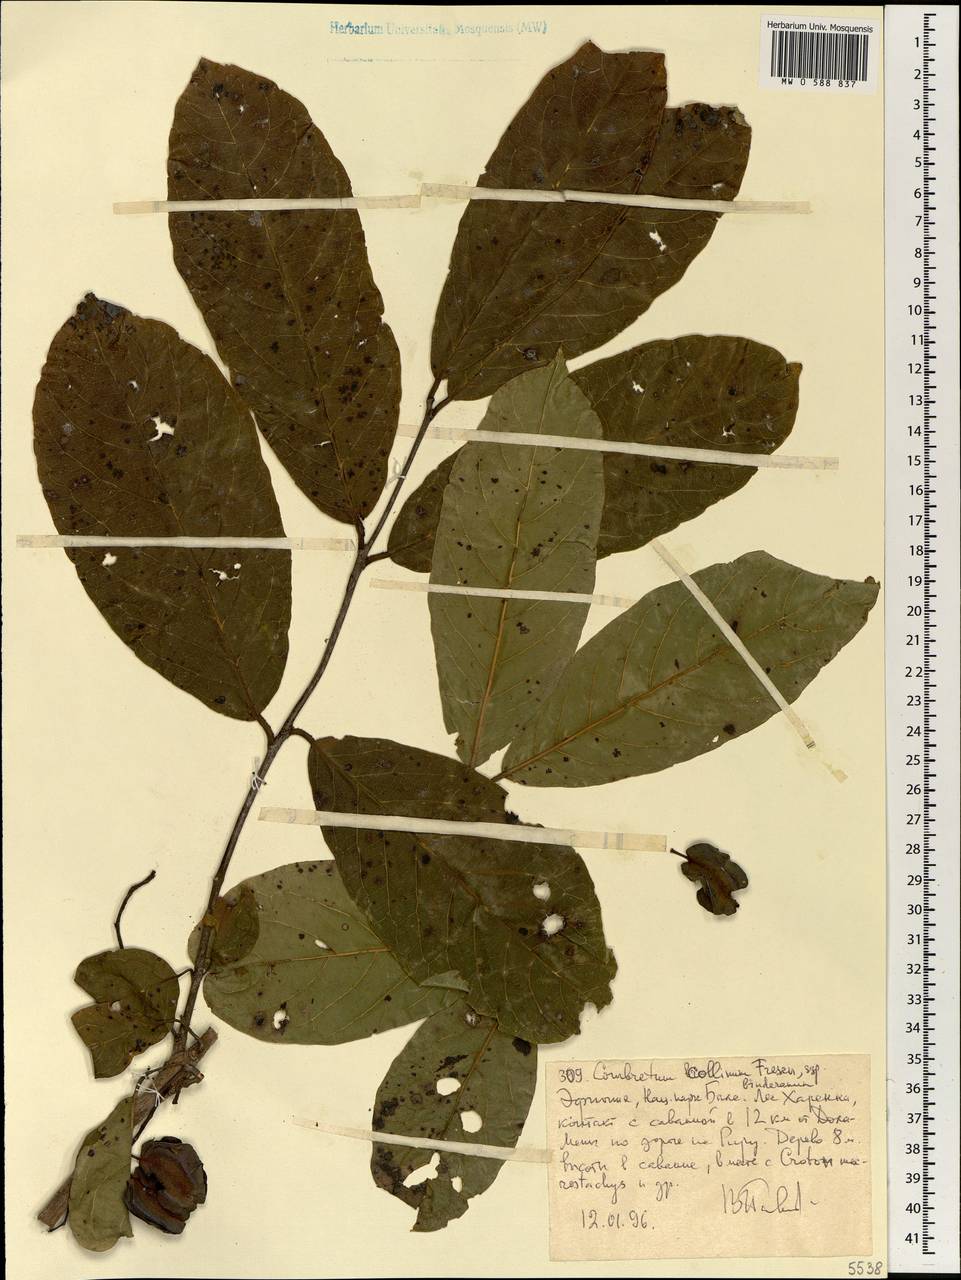 Combretum collinum subsp. binderianum (Kotschy) Okafor, Africa (AFR) (Ethiopia)